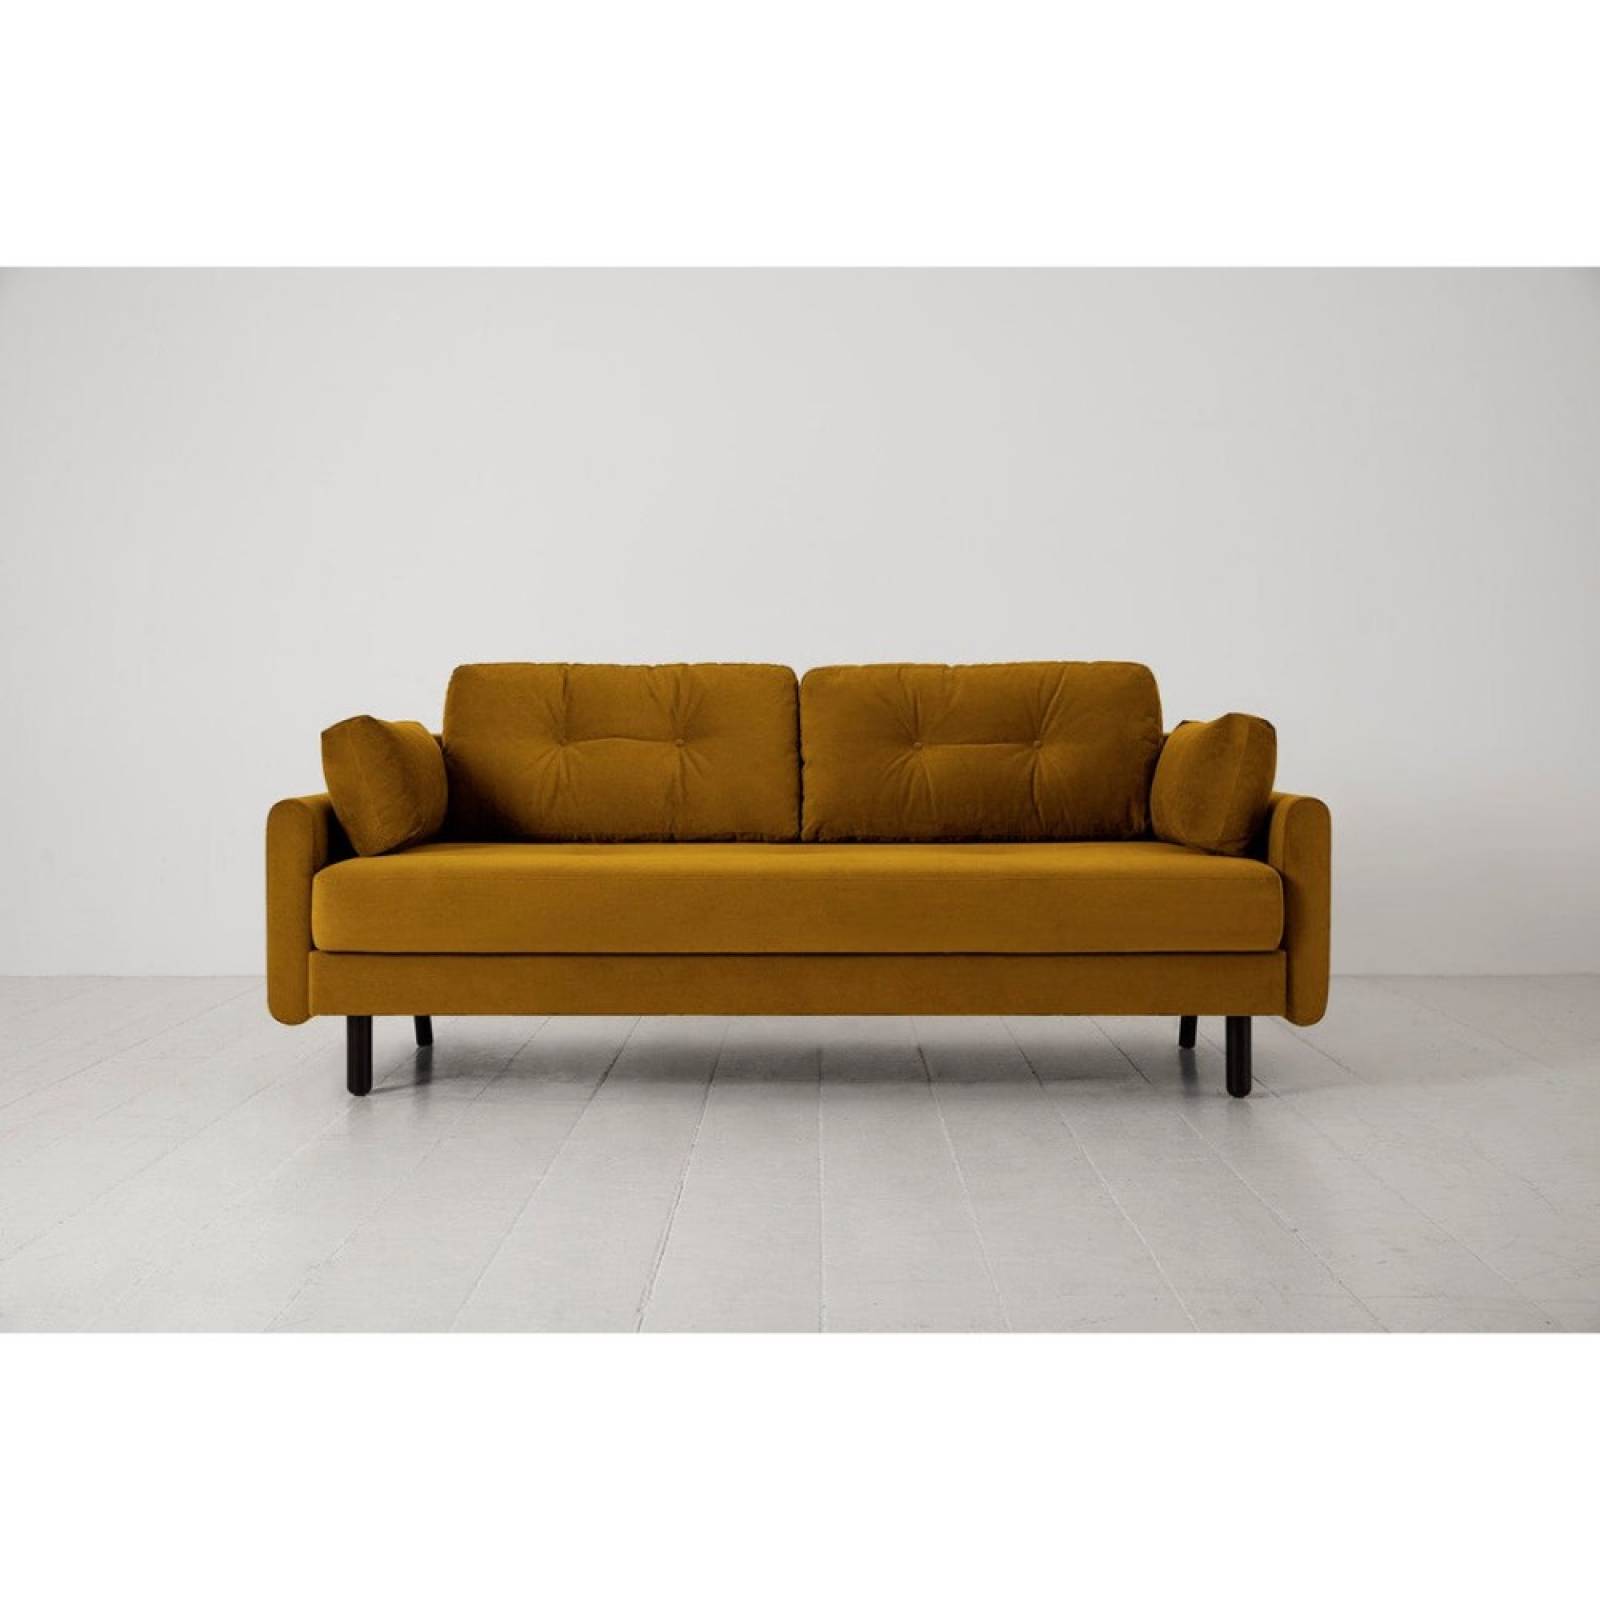 Swyft - Model 04 - 3 Seater Sofa Bed - Velvet Mustard thumbnails